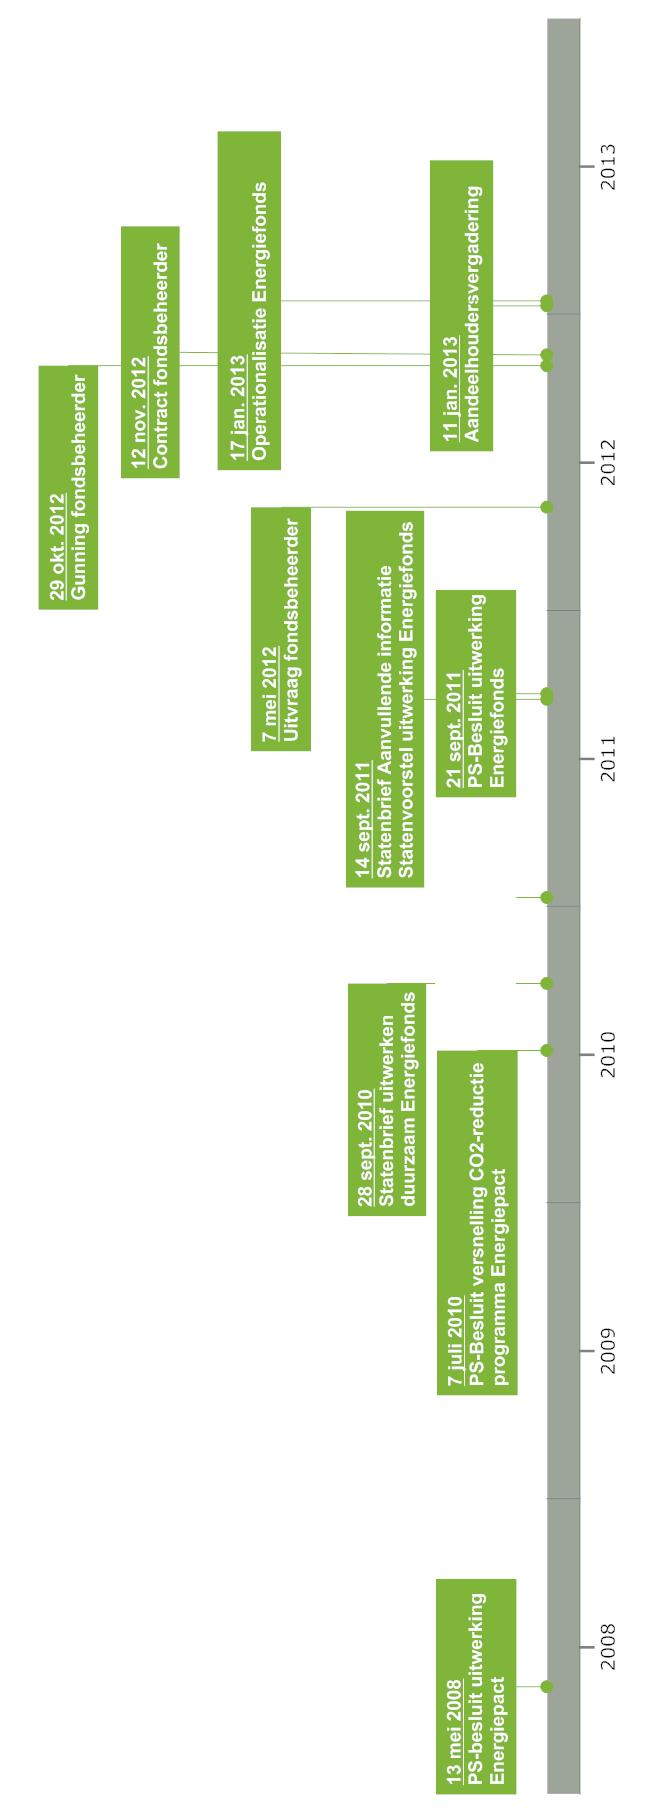 Bijlage 2: Aanloop naar oprichting Energiefonds 2013: Operationeel (vanaf 17 januari) 2012: Toewerken